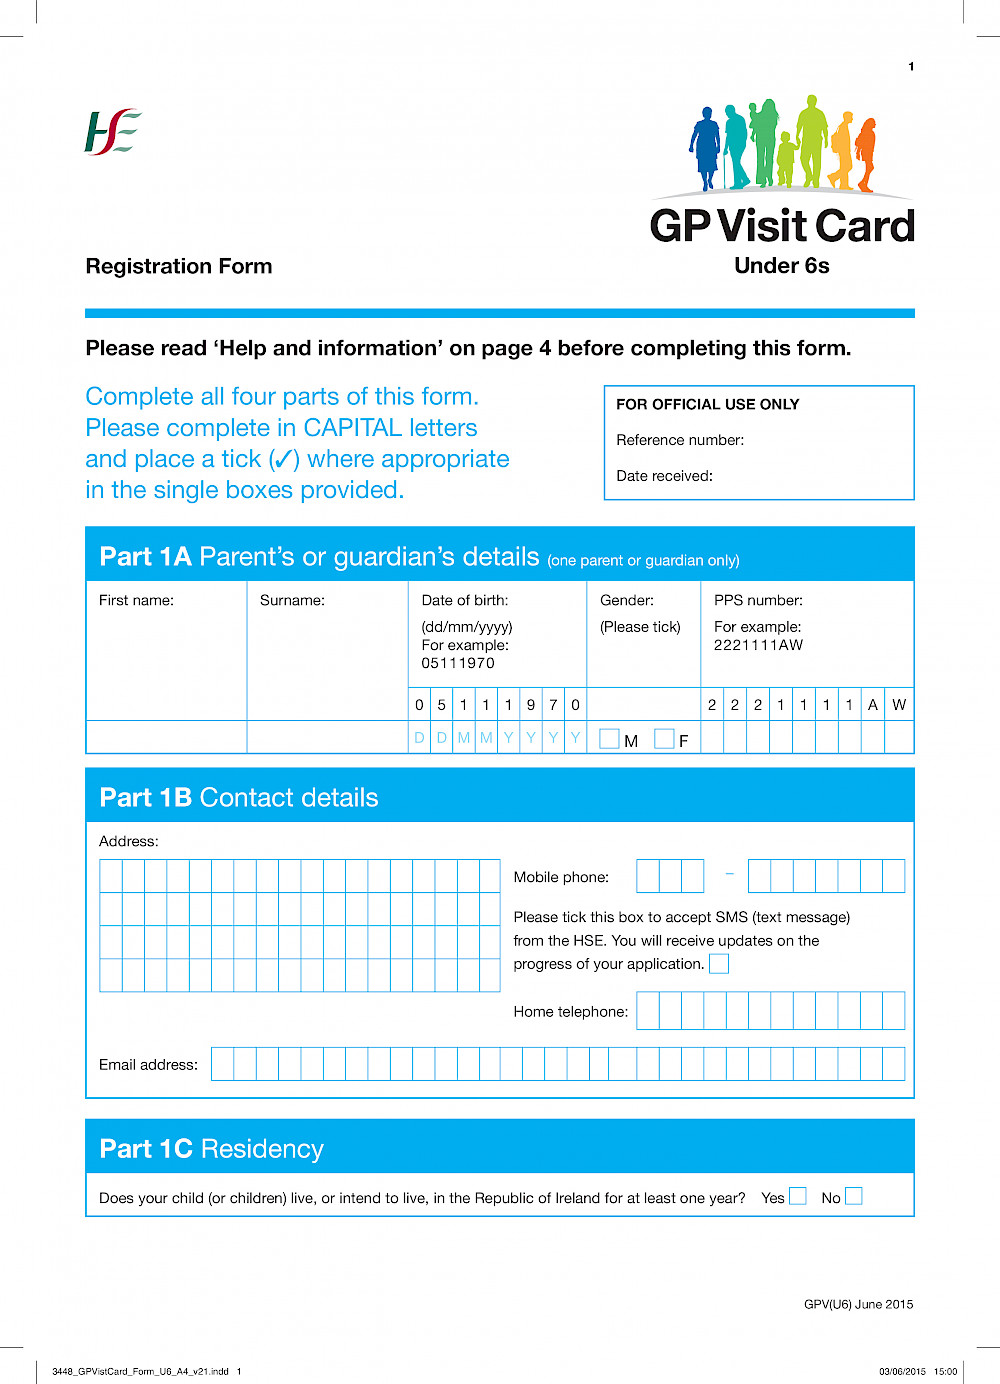 Under 6s GP Visit Card Registration Form